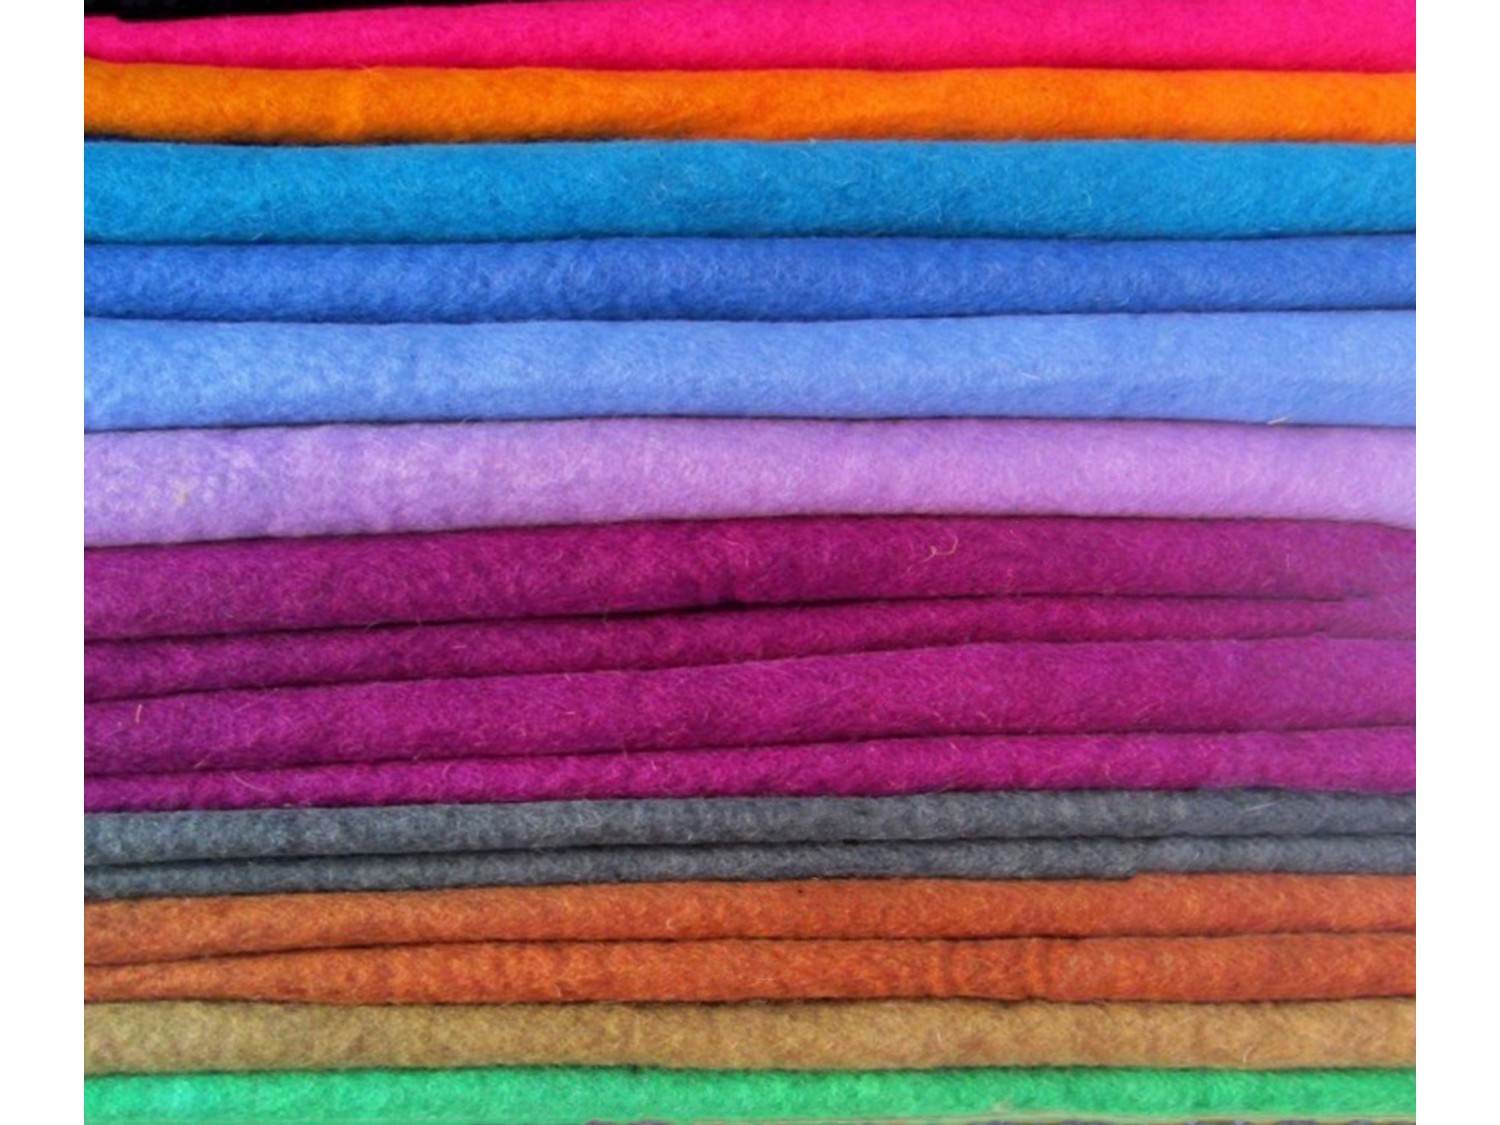 100 colors Felt Fabric [ DIY Material ] - Felt & Yarn